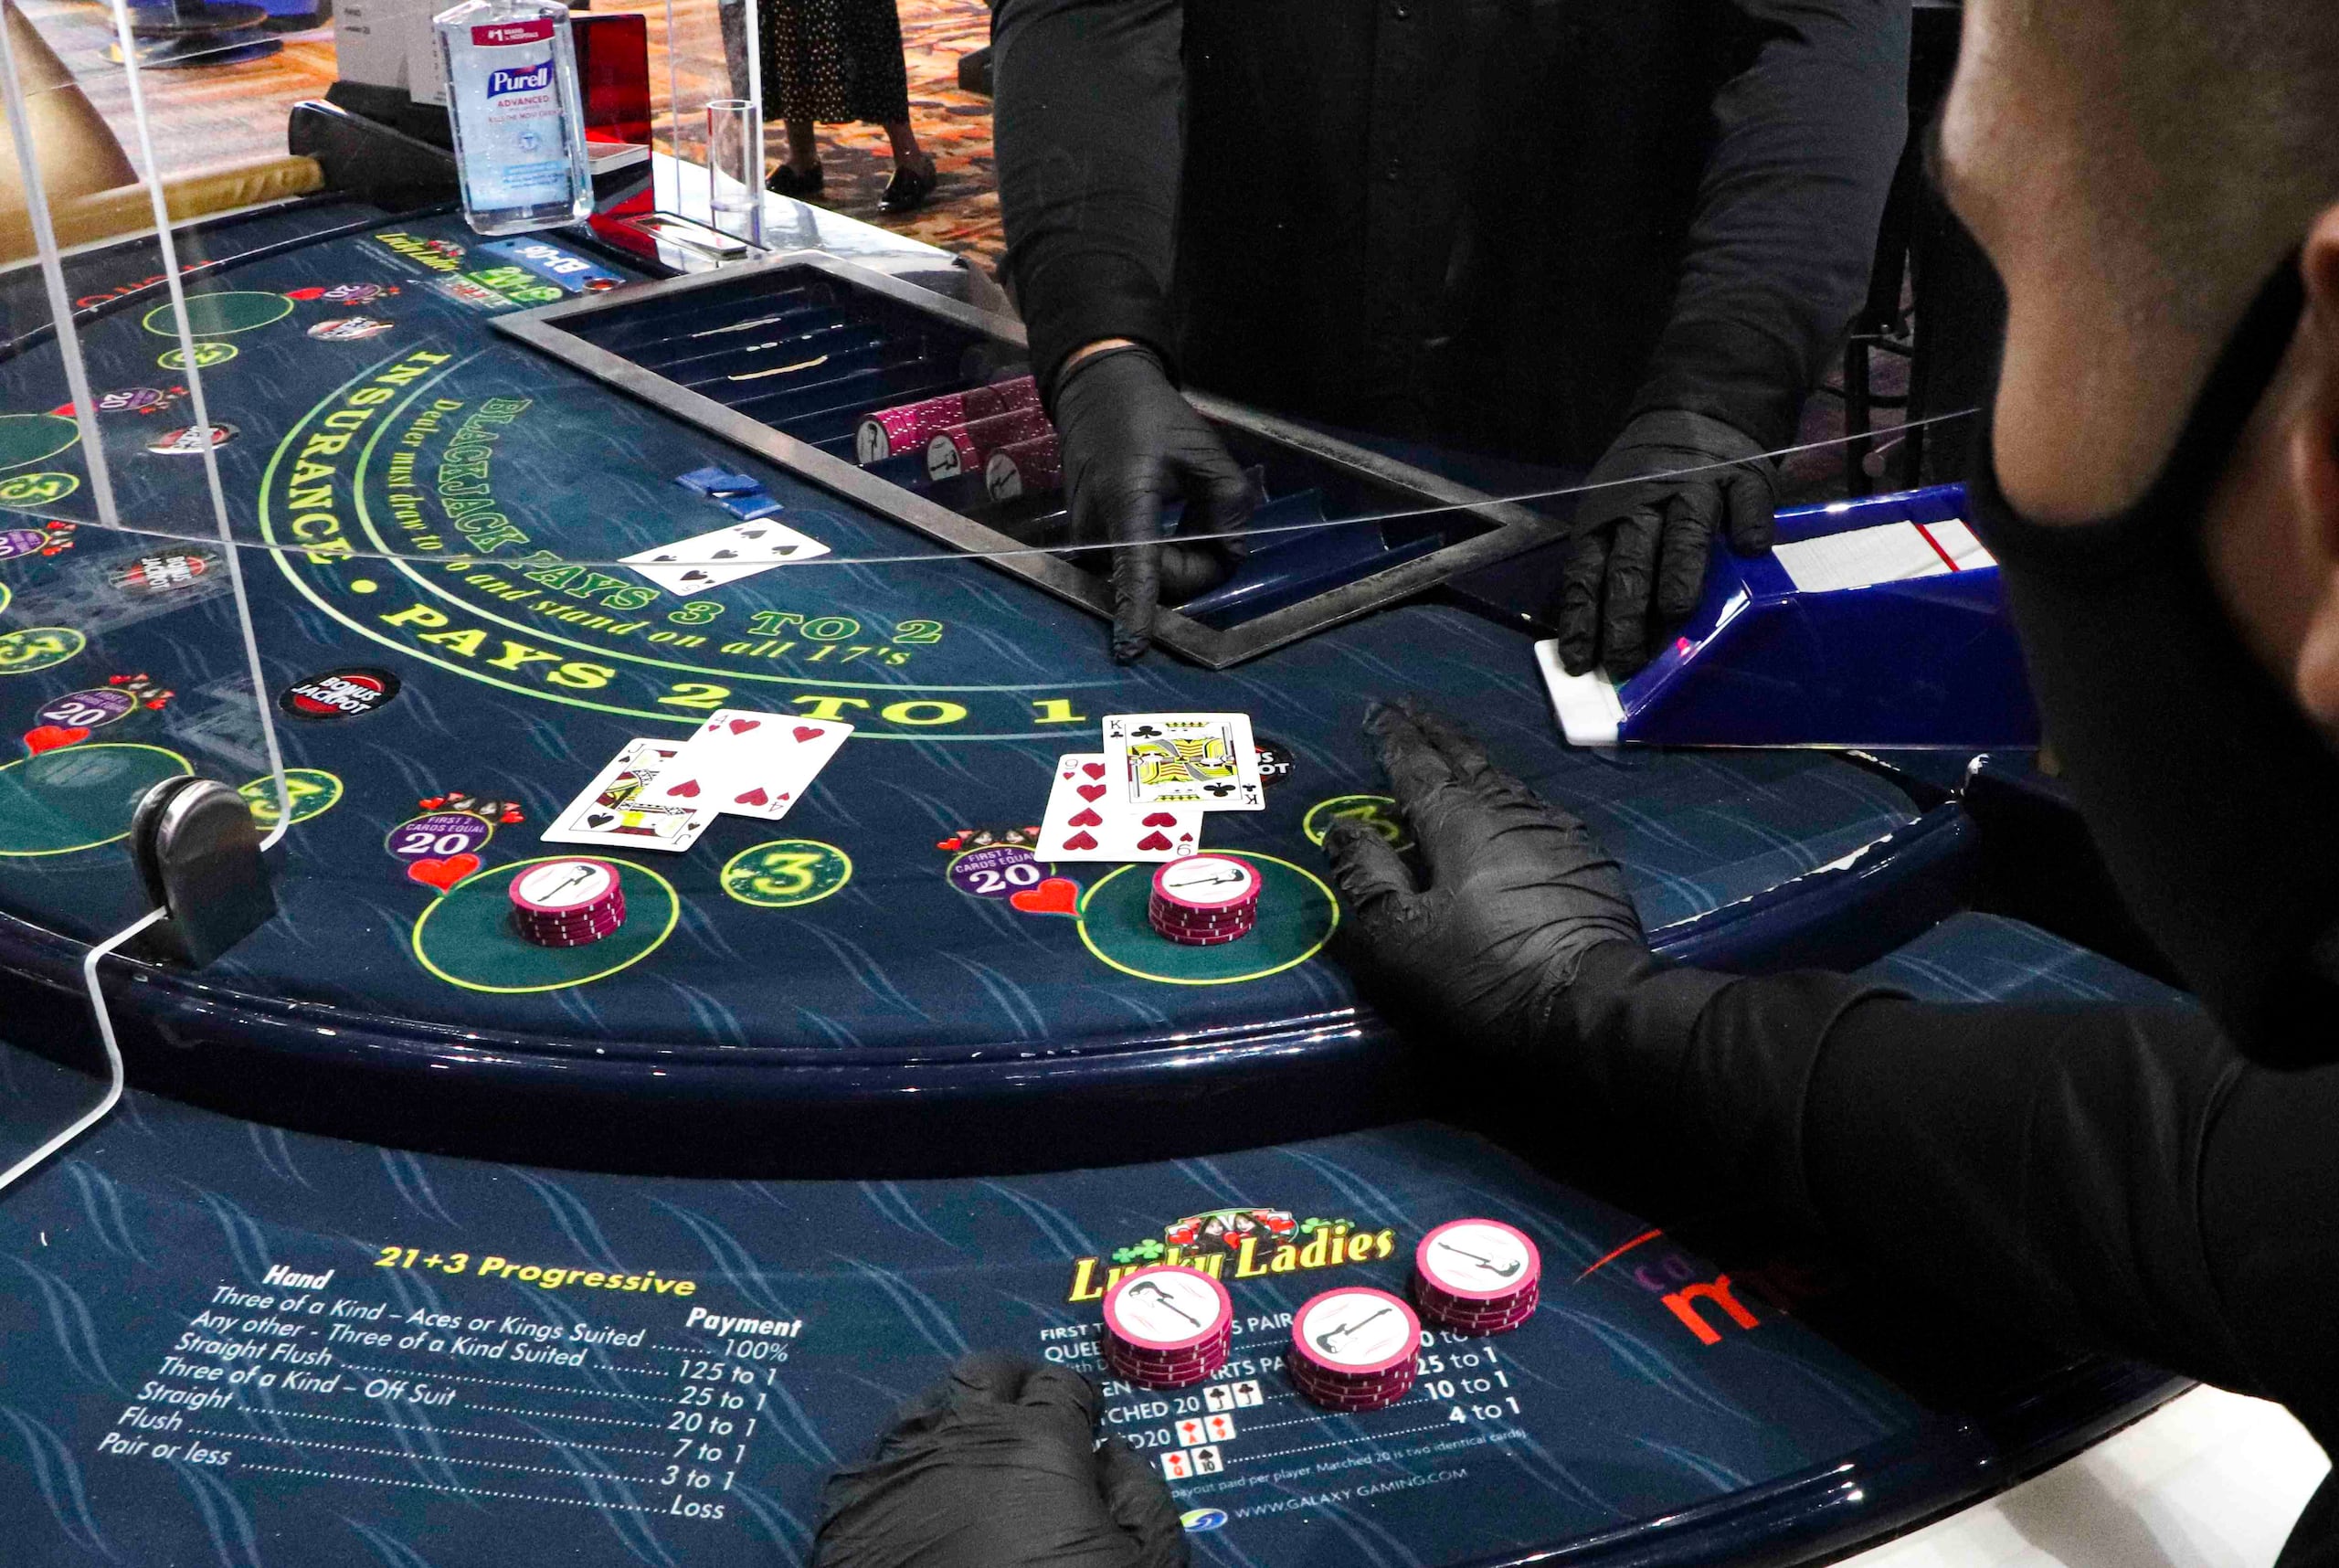 La nueva orden ejecutiva autoriza la apertura de los casinos, los cuales podrán recibir clientes hasta un 75% de su capacidad. (GFR Media)